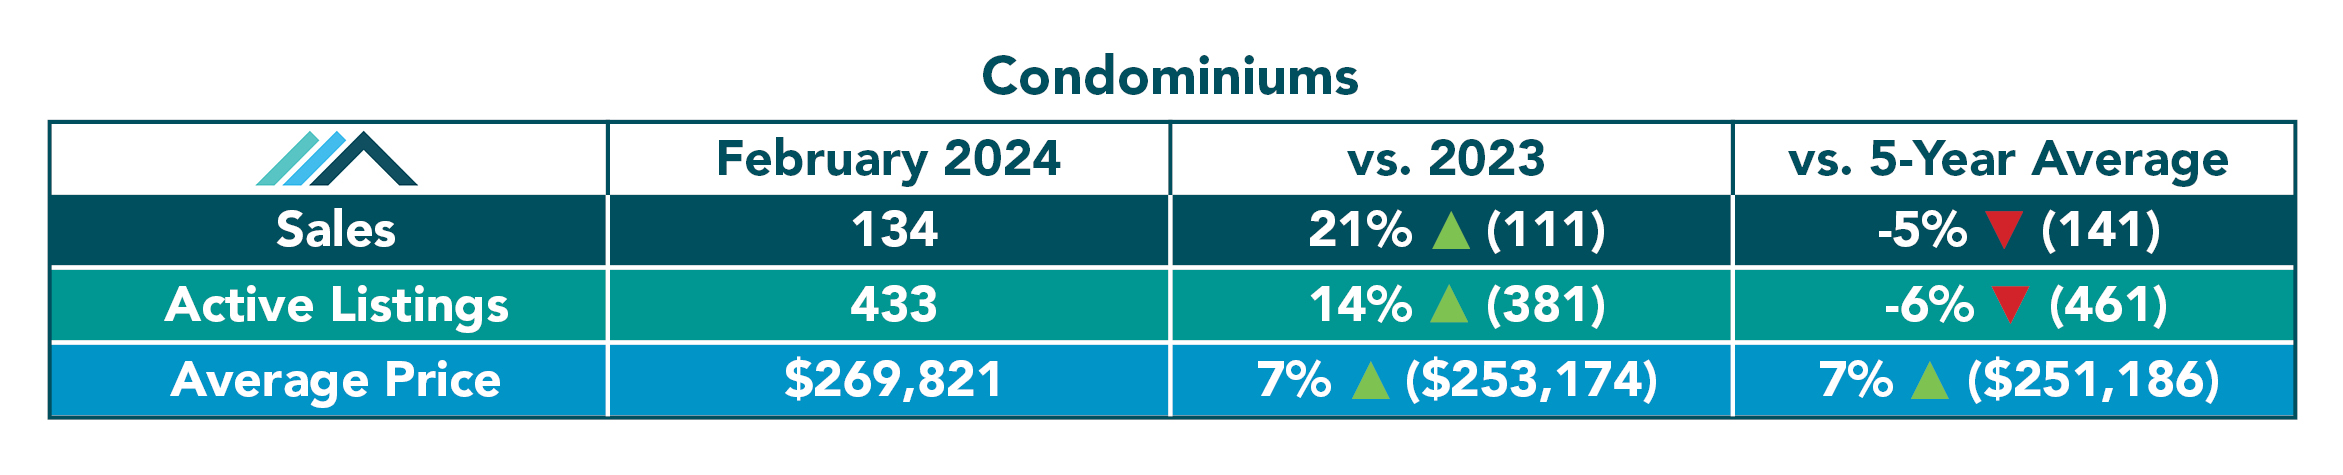 Condominium Sales Feb 2024